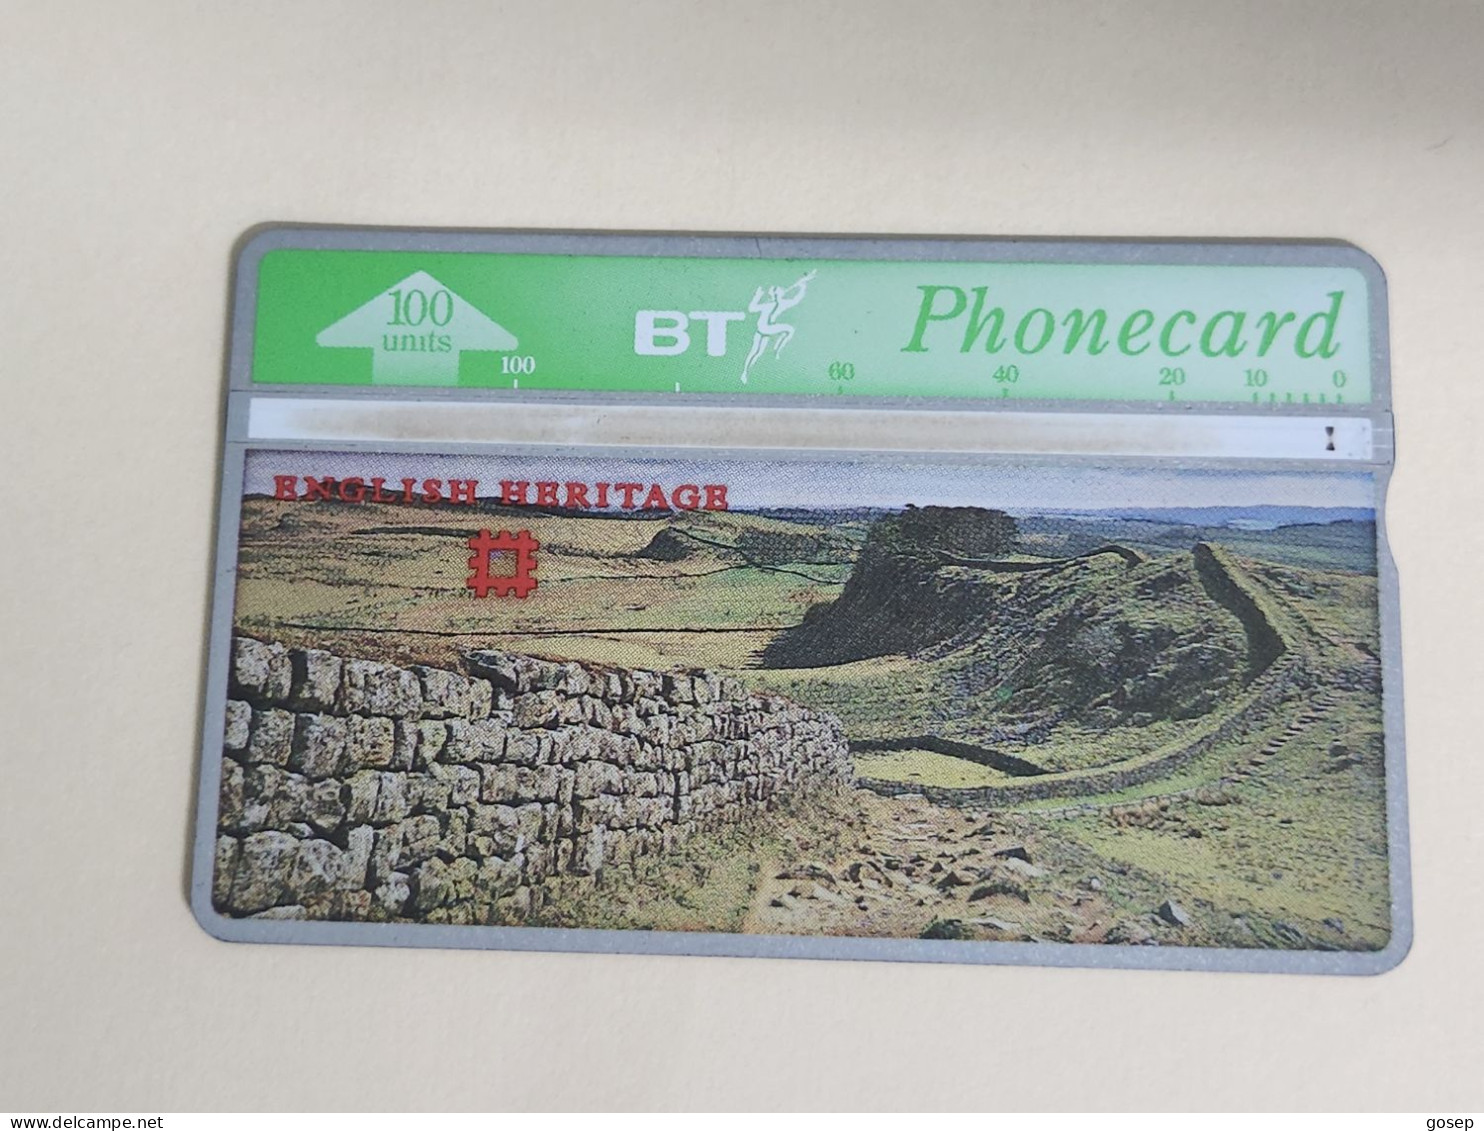 United Kingdom-(BTA117)-HERITAGE-Hadrian's Wall-(204)(100units)(527H20786)price Cataloge3.00£-used+1card Prepiad Free - BT Edición Publicitaria